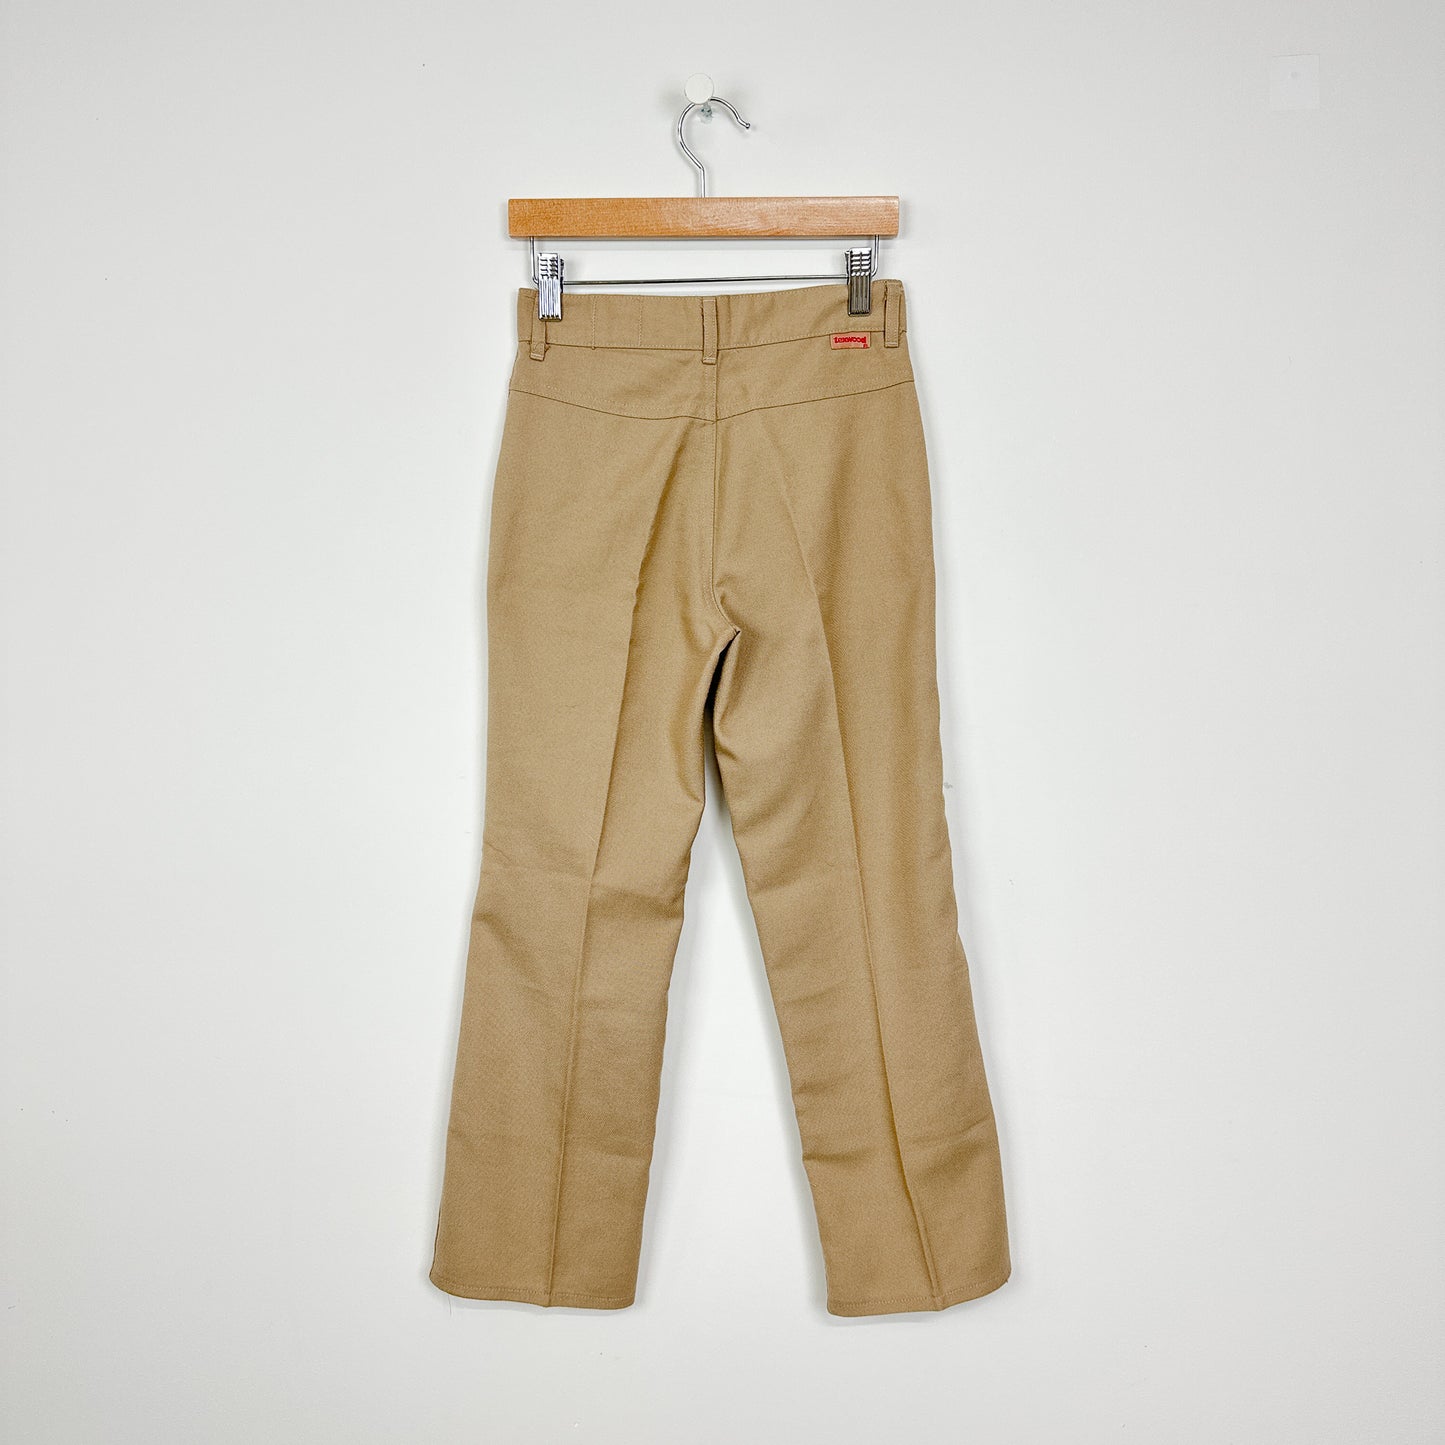 70's Kids Khaki Bootcut Pants - Size 12